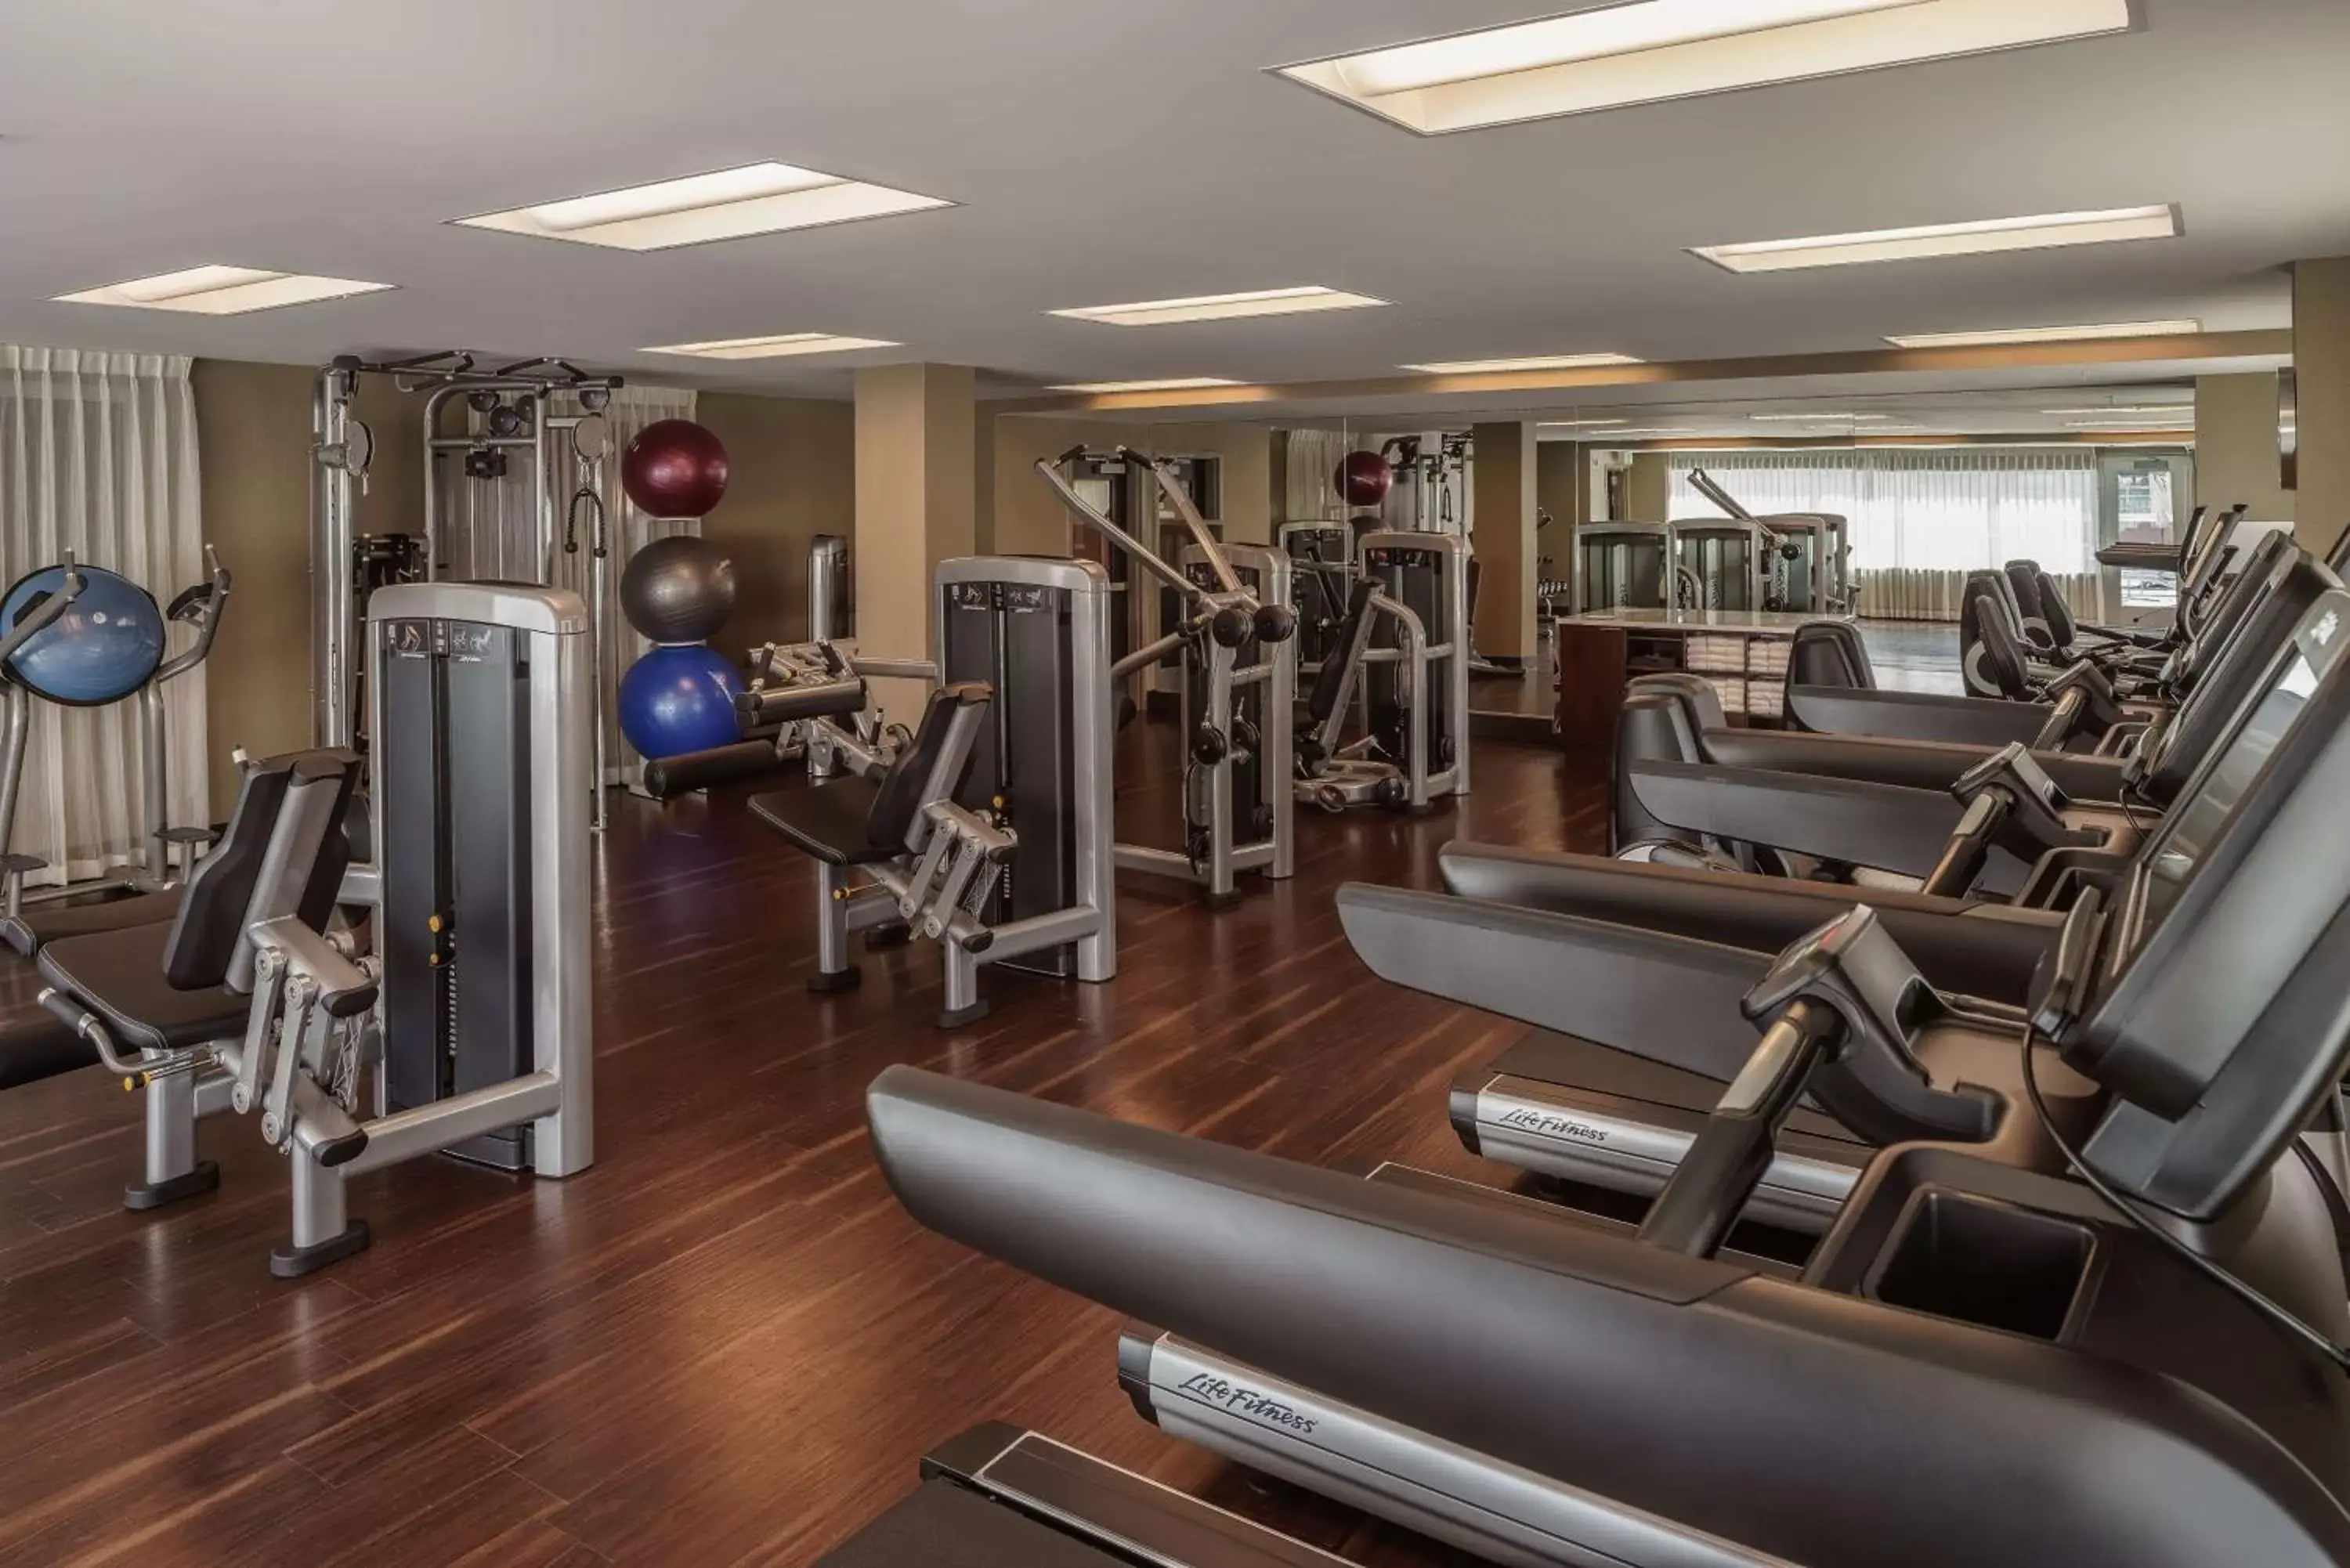 Fitness centre/facilities, Fitness Center/Facilities in Hyatt Regency Aurora-Denver Conference Center